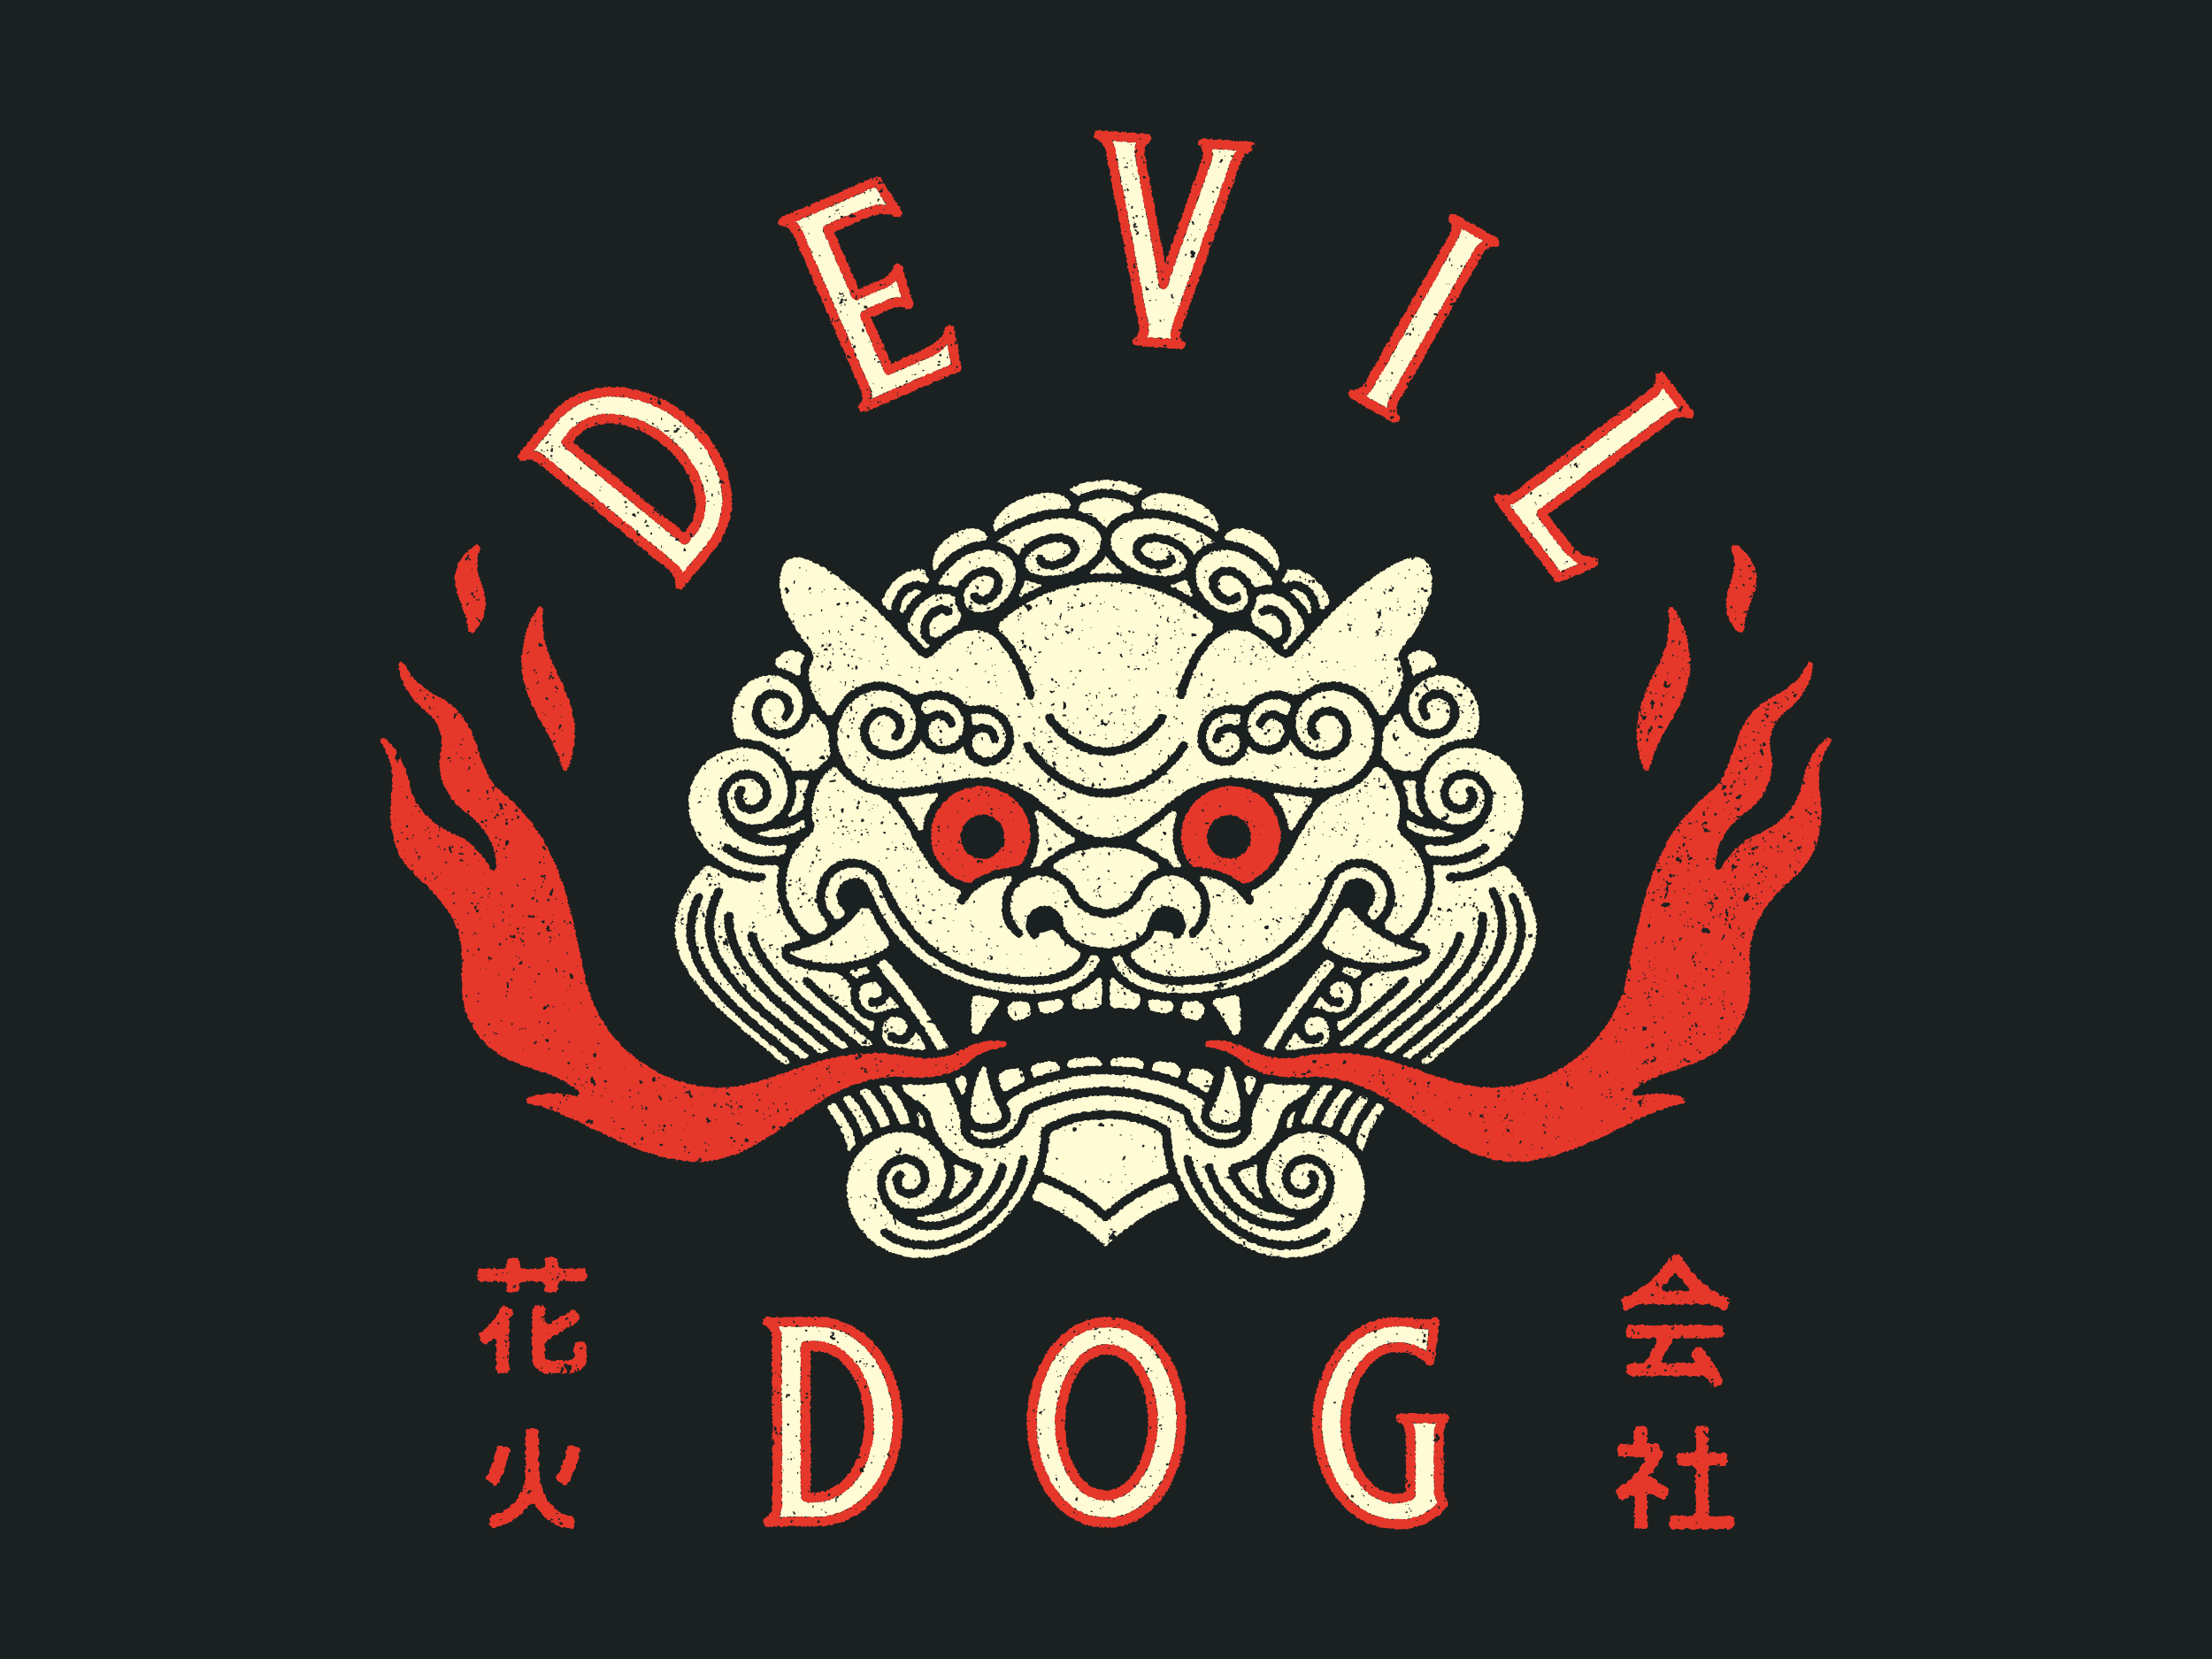 Devil Dog Fireworks 